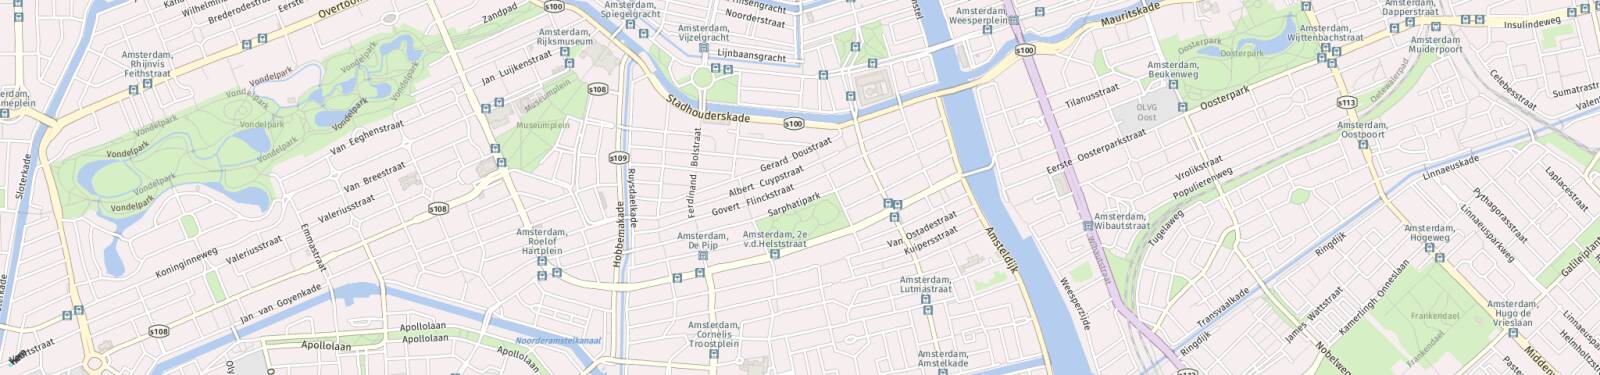 Kaart met locatie Appartement Govert Flinckstraat